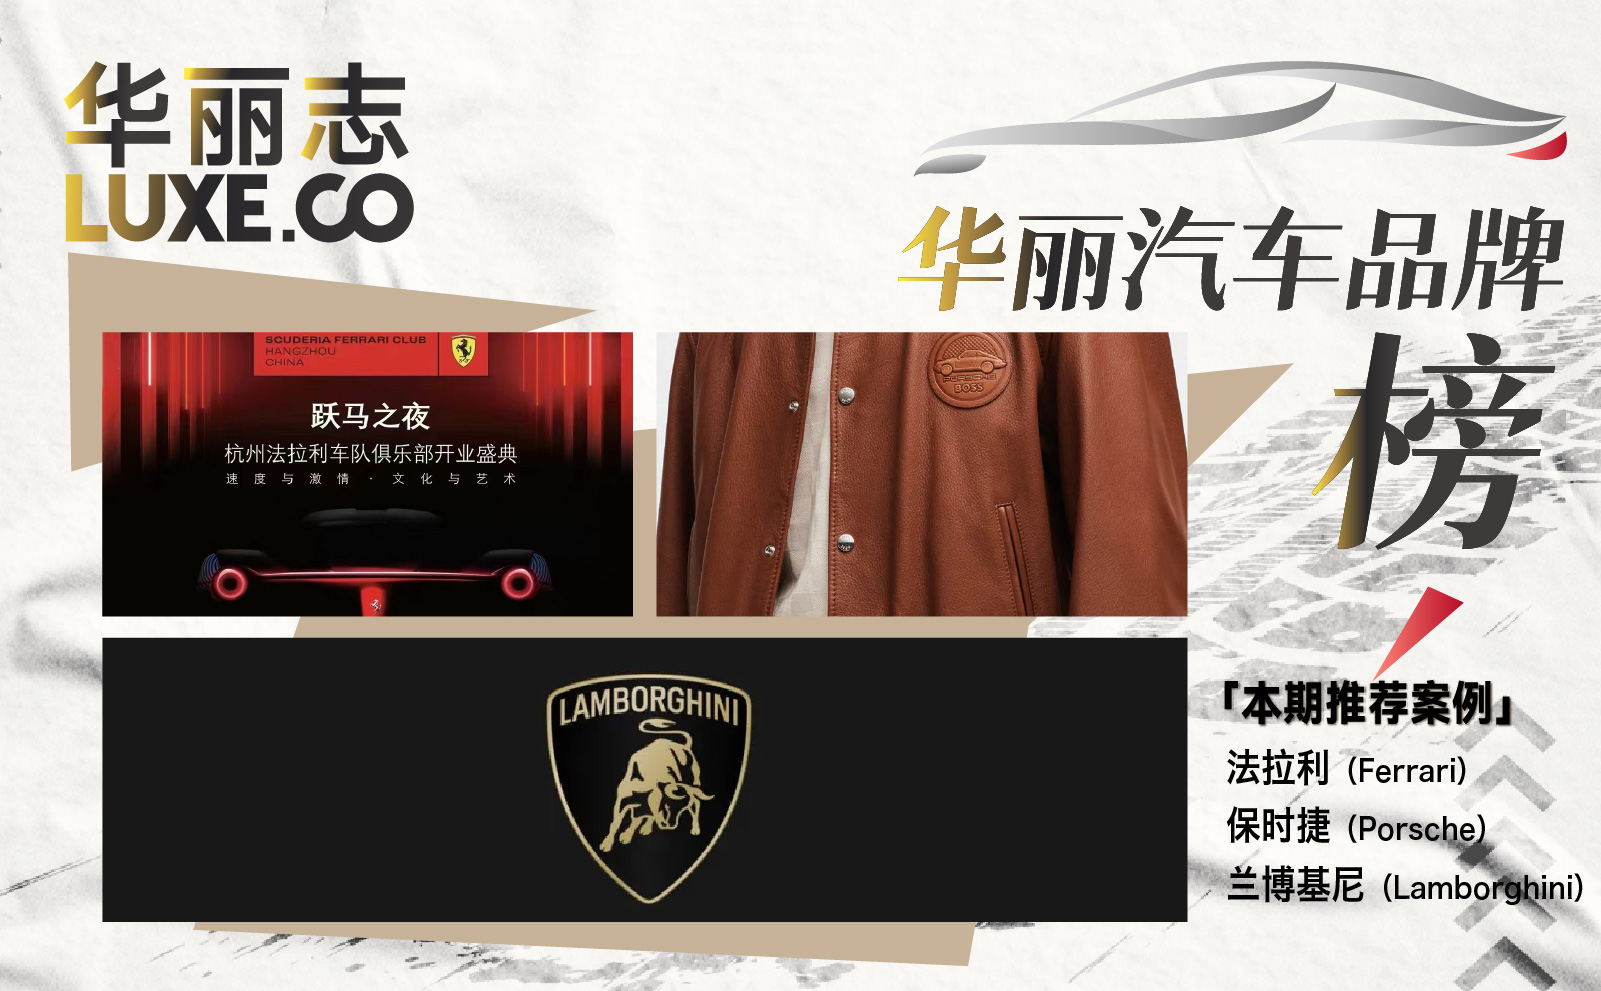 法拉利授权成立国内首个实体俱乐部，兰博基尼换标…等32家汽车品牌最新中国动态「华丽汽车品牌榜」第3期